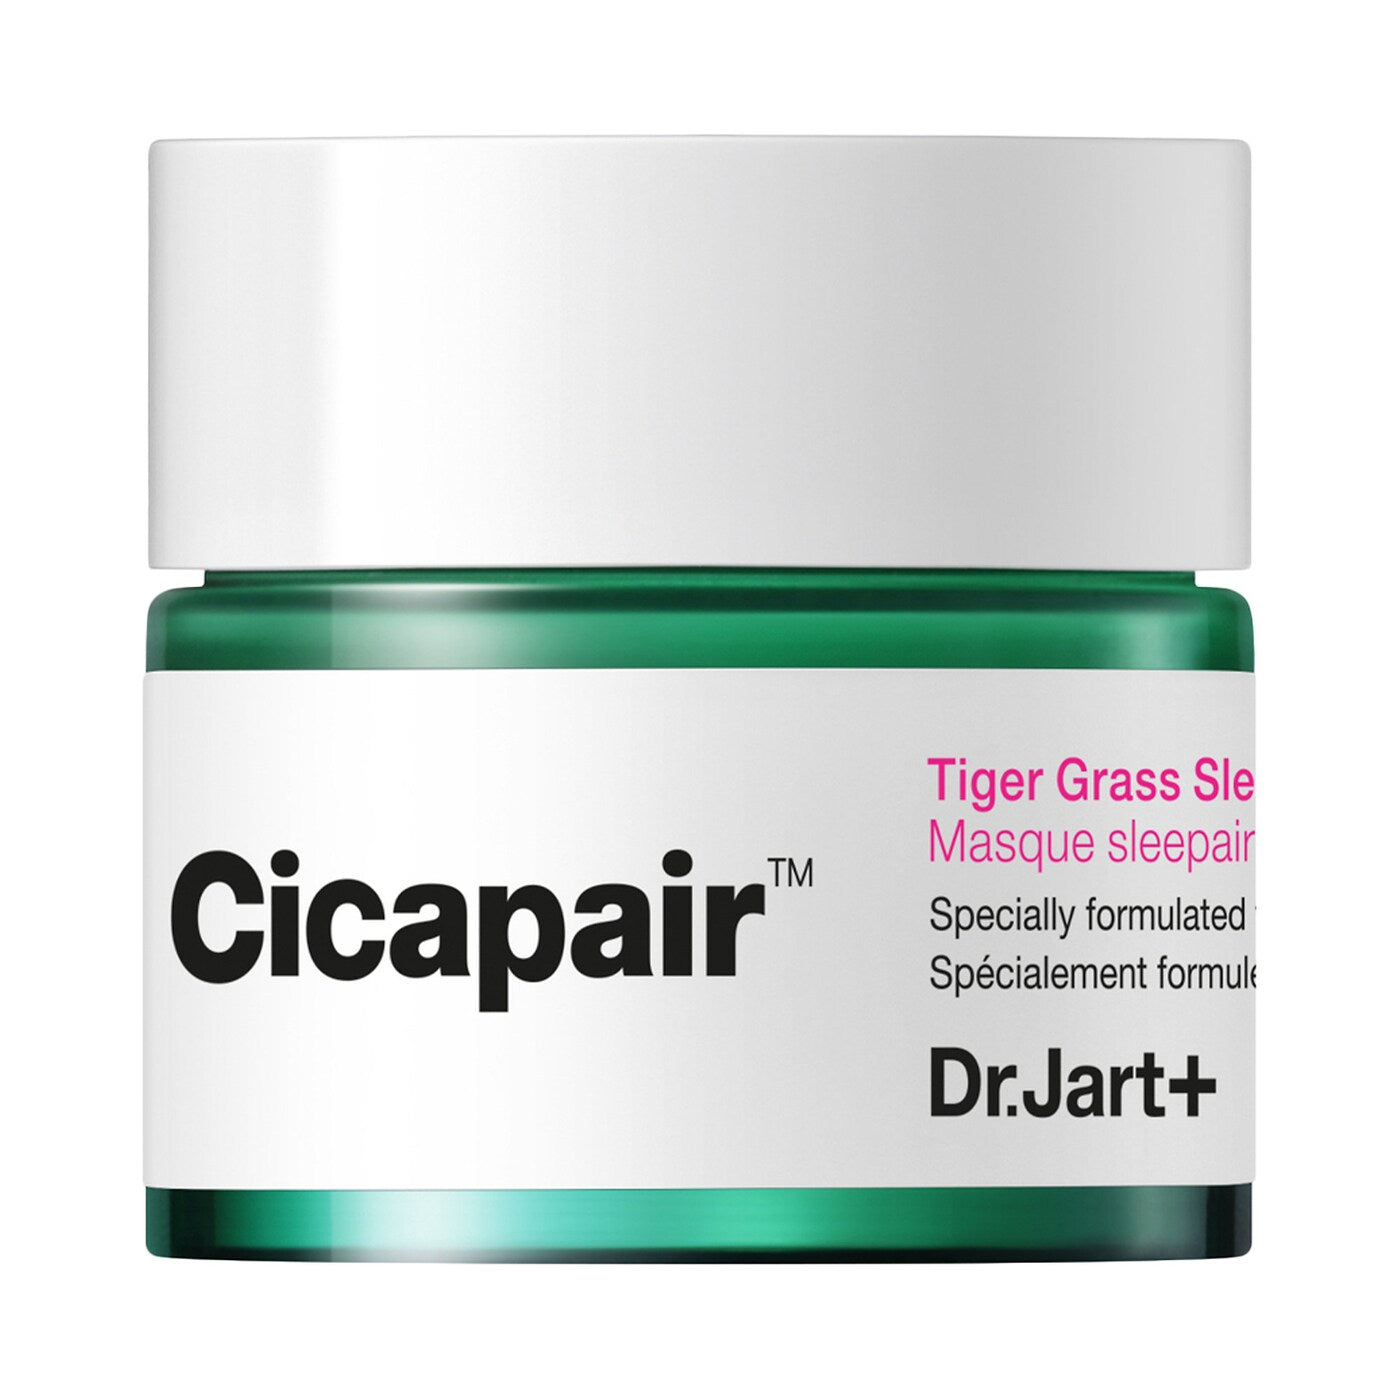 Cicapair Sleepair Intensive Mask trial size